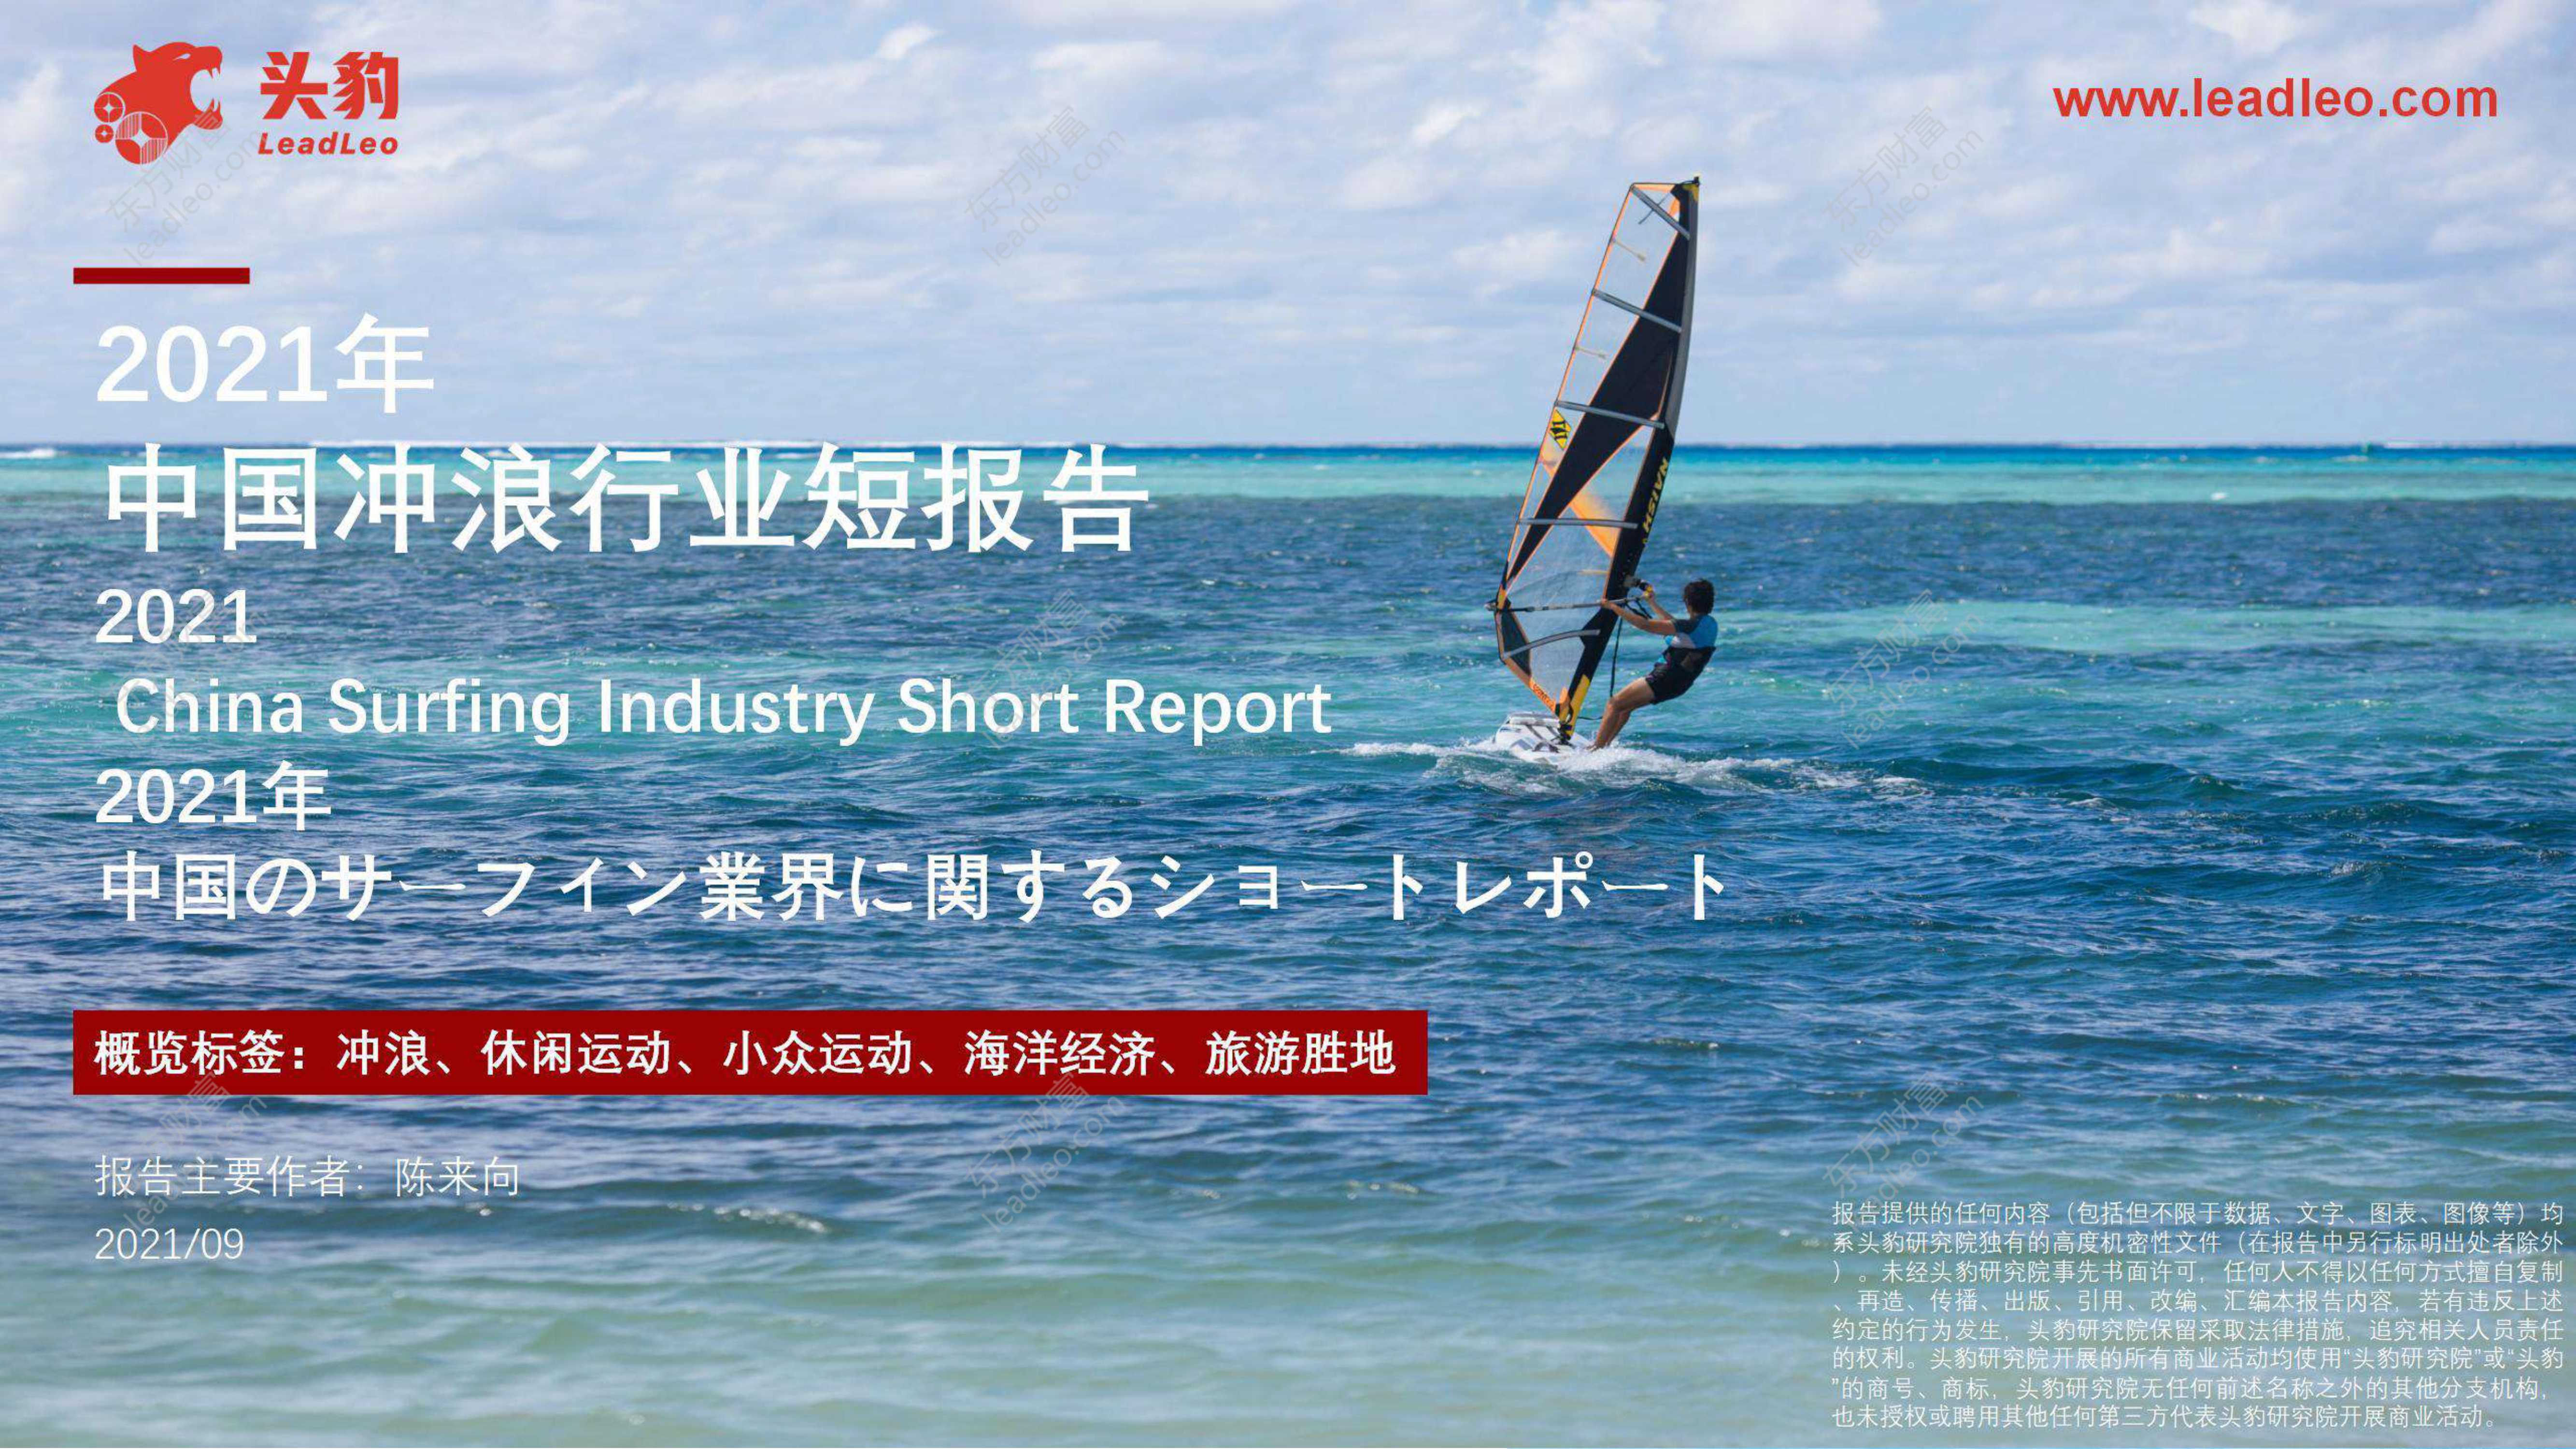 头豹研究院-2021年中国冲浪行业短报告-2021.10-30页